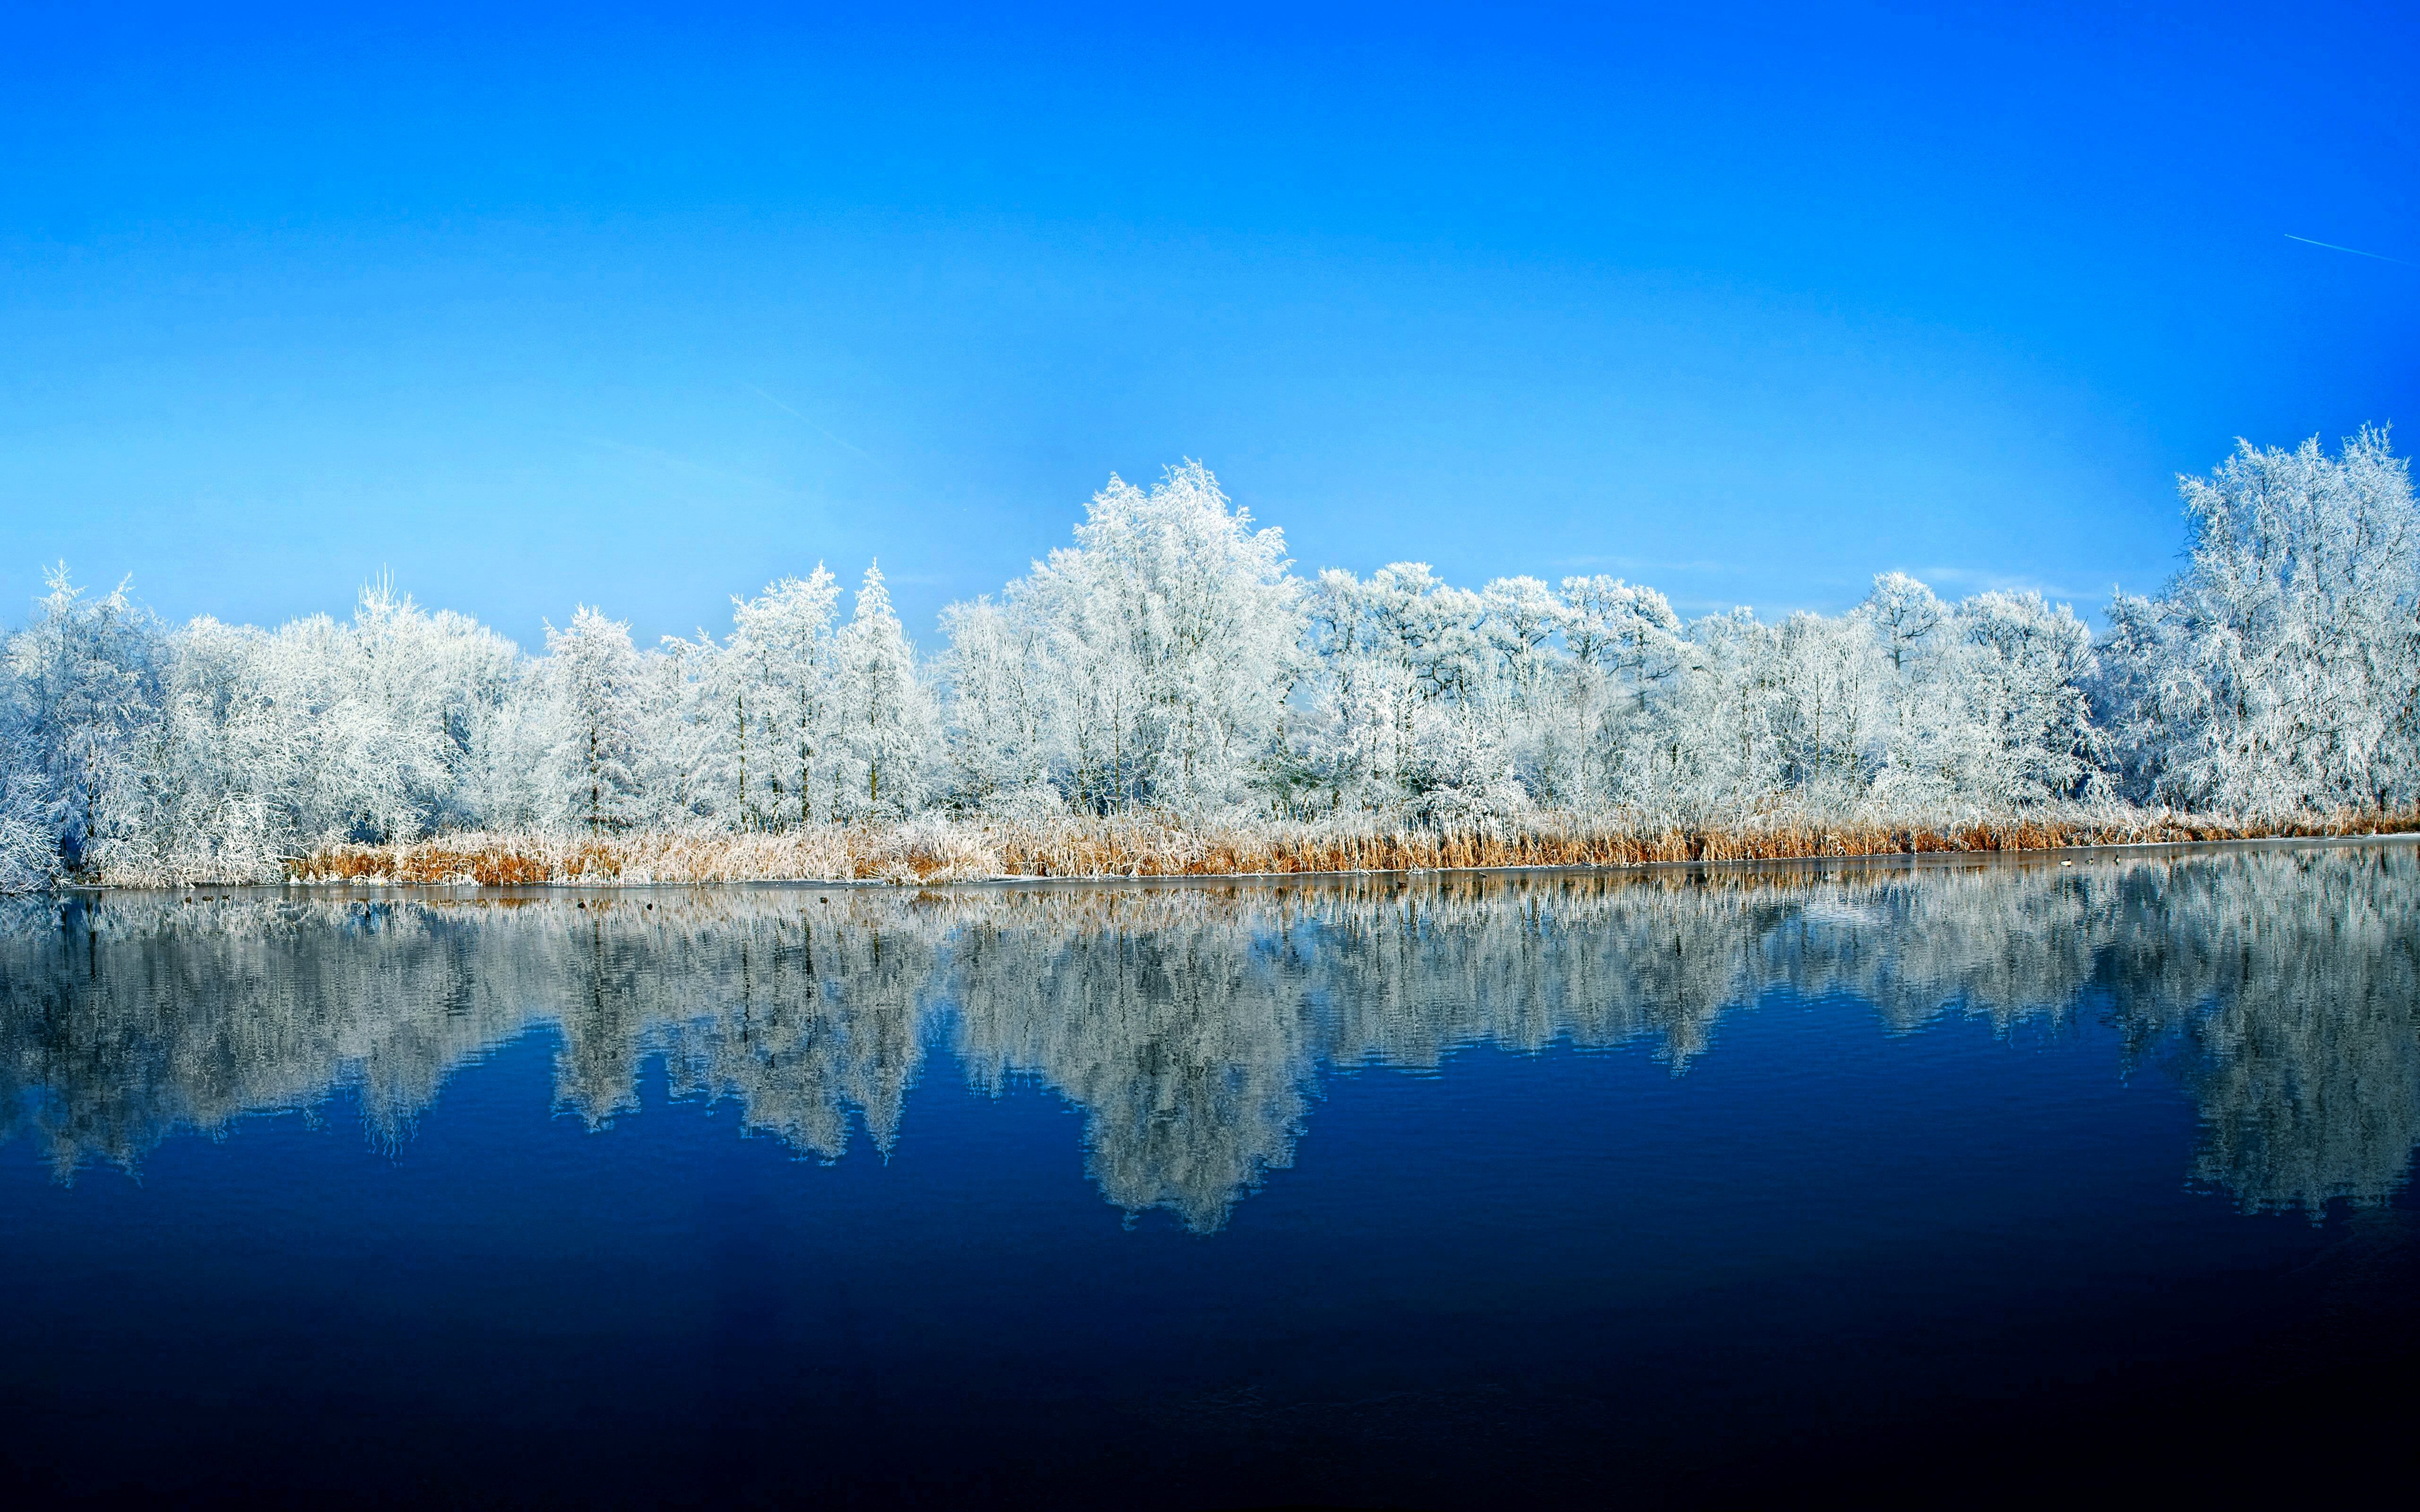 Скачать обои бесплатно Зима, Природа, Вода, Снег, Отражение, Дерево, Синий, Земля/природа картинка на рабочий стол ПК